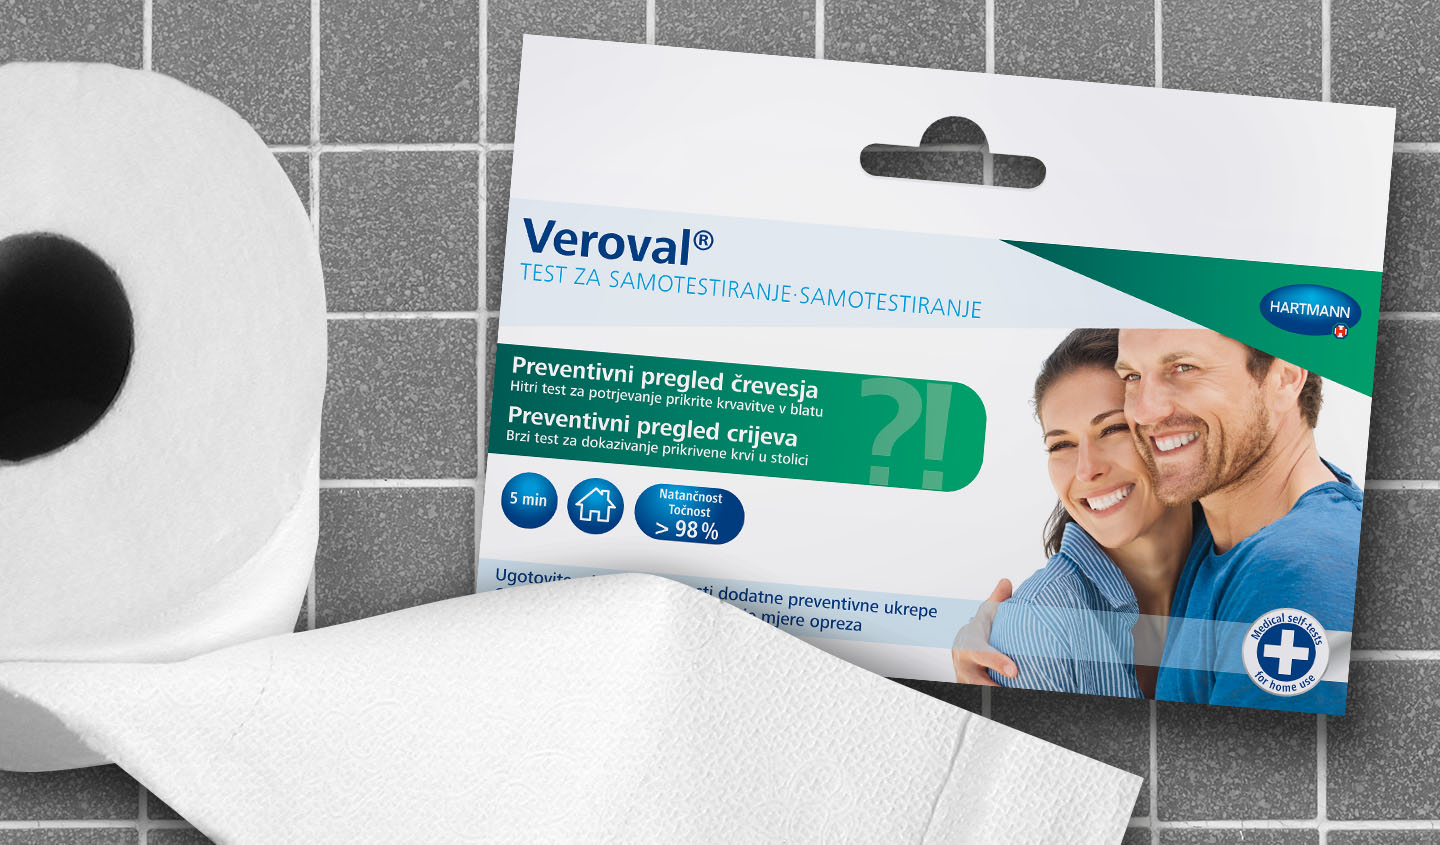 Verpackung des Veroval® Selbst-Test zur Darmvorsorge liegt neben einer Rolle Toilettenpapier